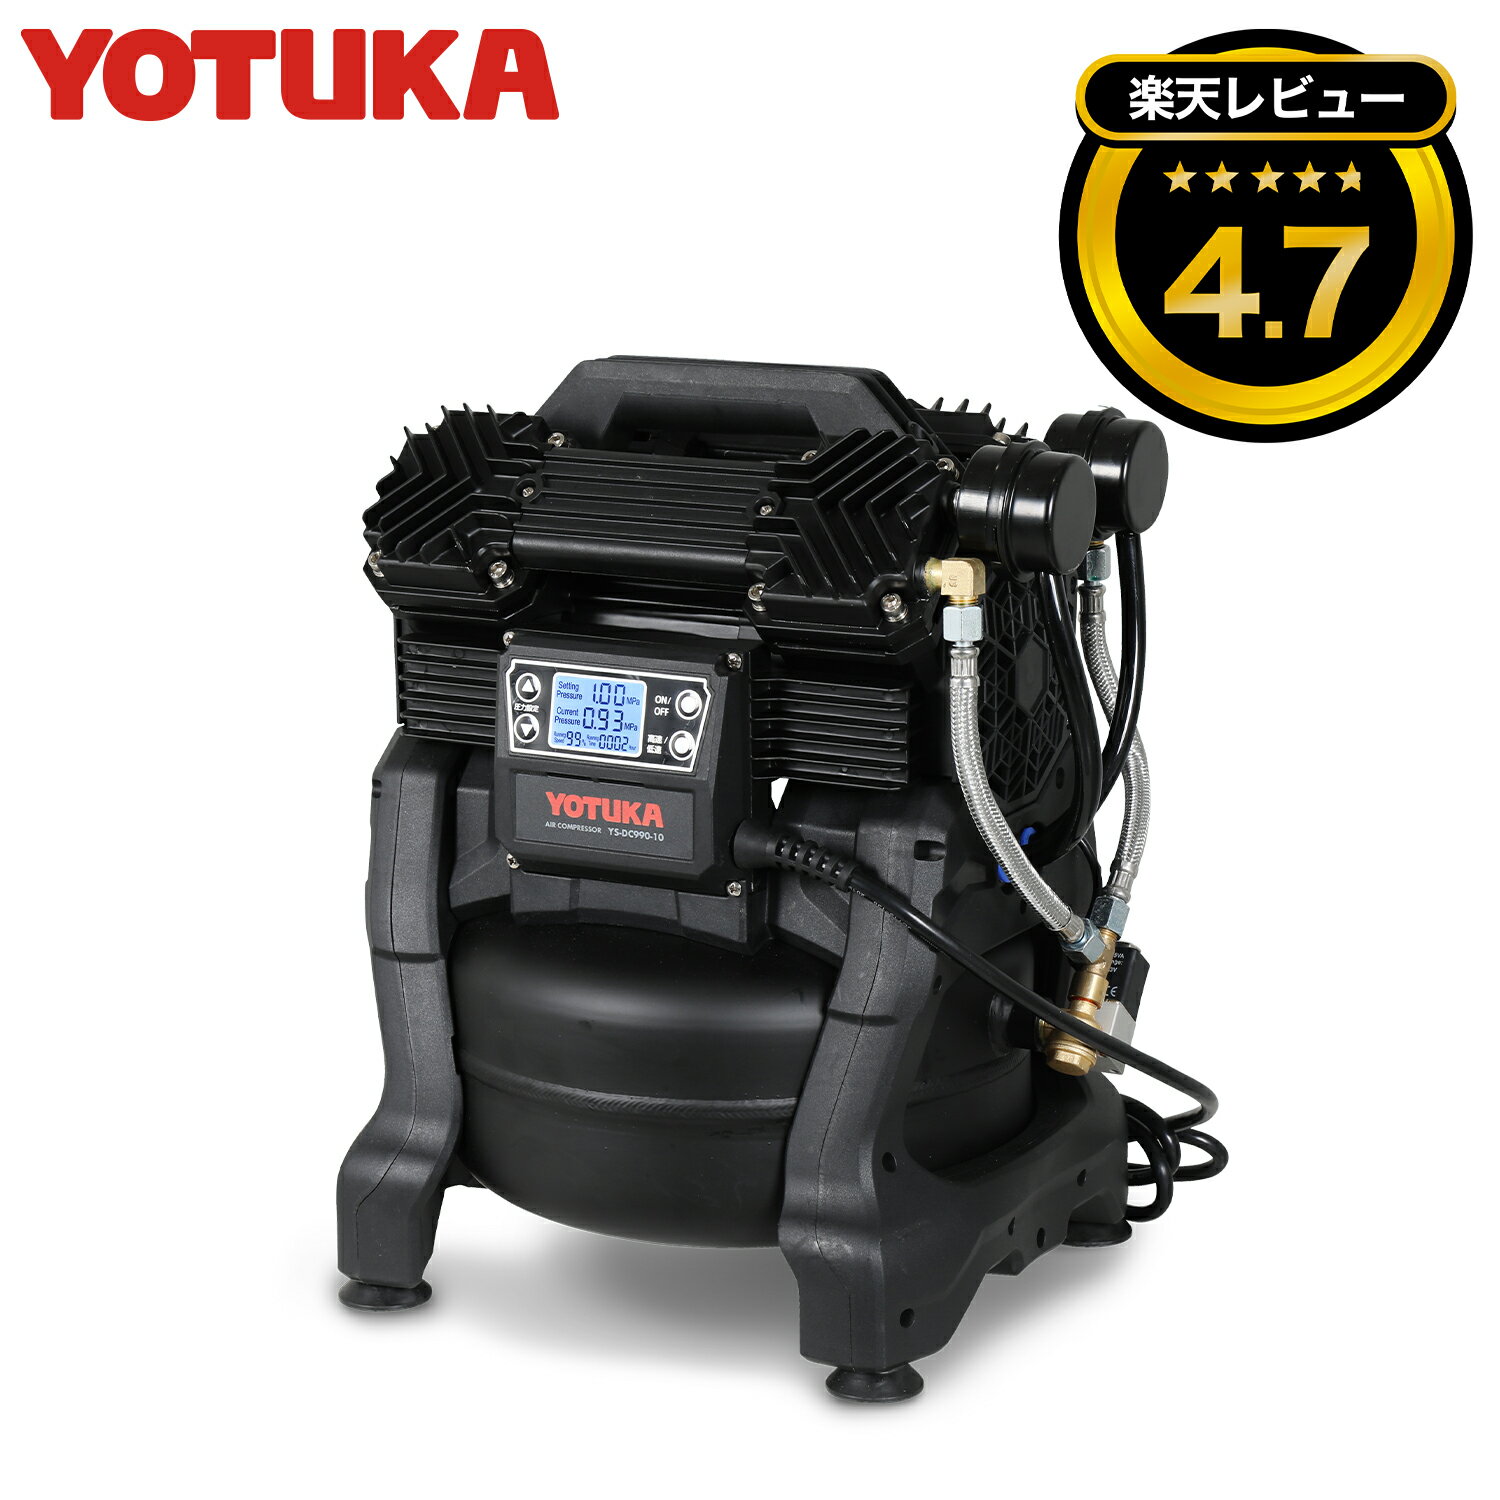 ＜数量限定＞ エアーコンプレッサー YOTUKA（タンク容量10L 100V AC電源 コンプレッサー ブラシレス オイルレス 最大圧力1.0MPa 吐出空気量162L 液晶パネル 静音）YS-DC990-10